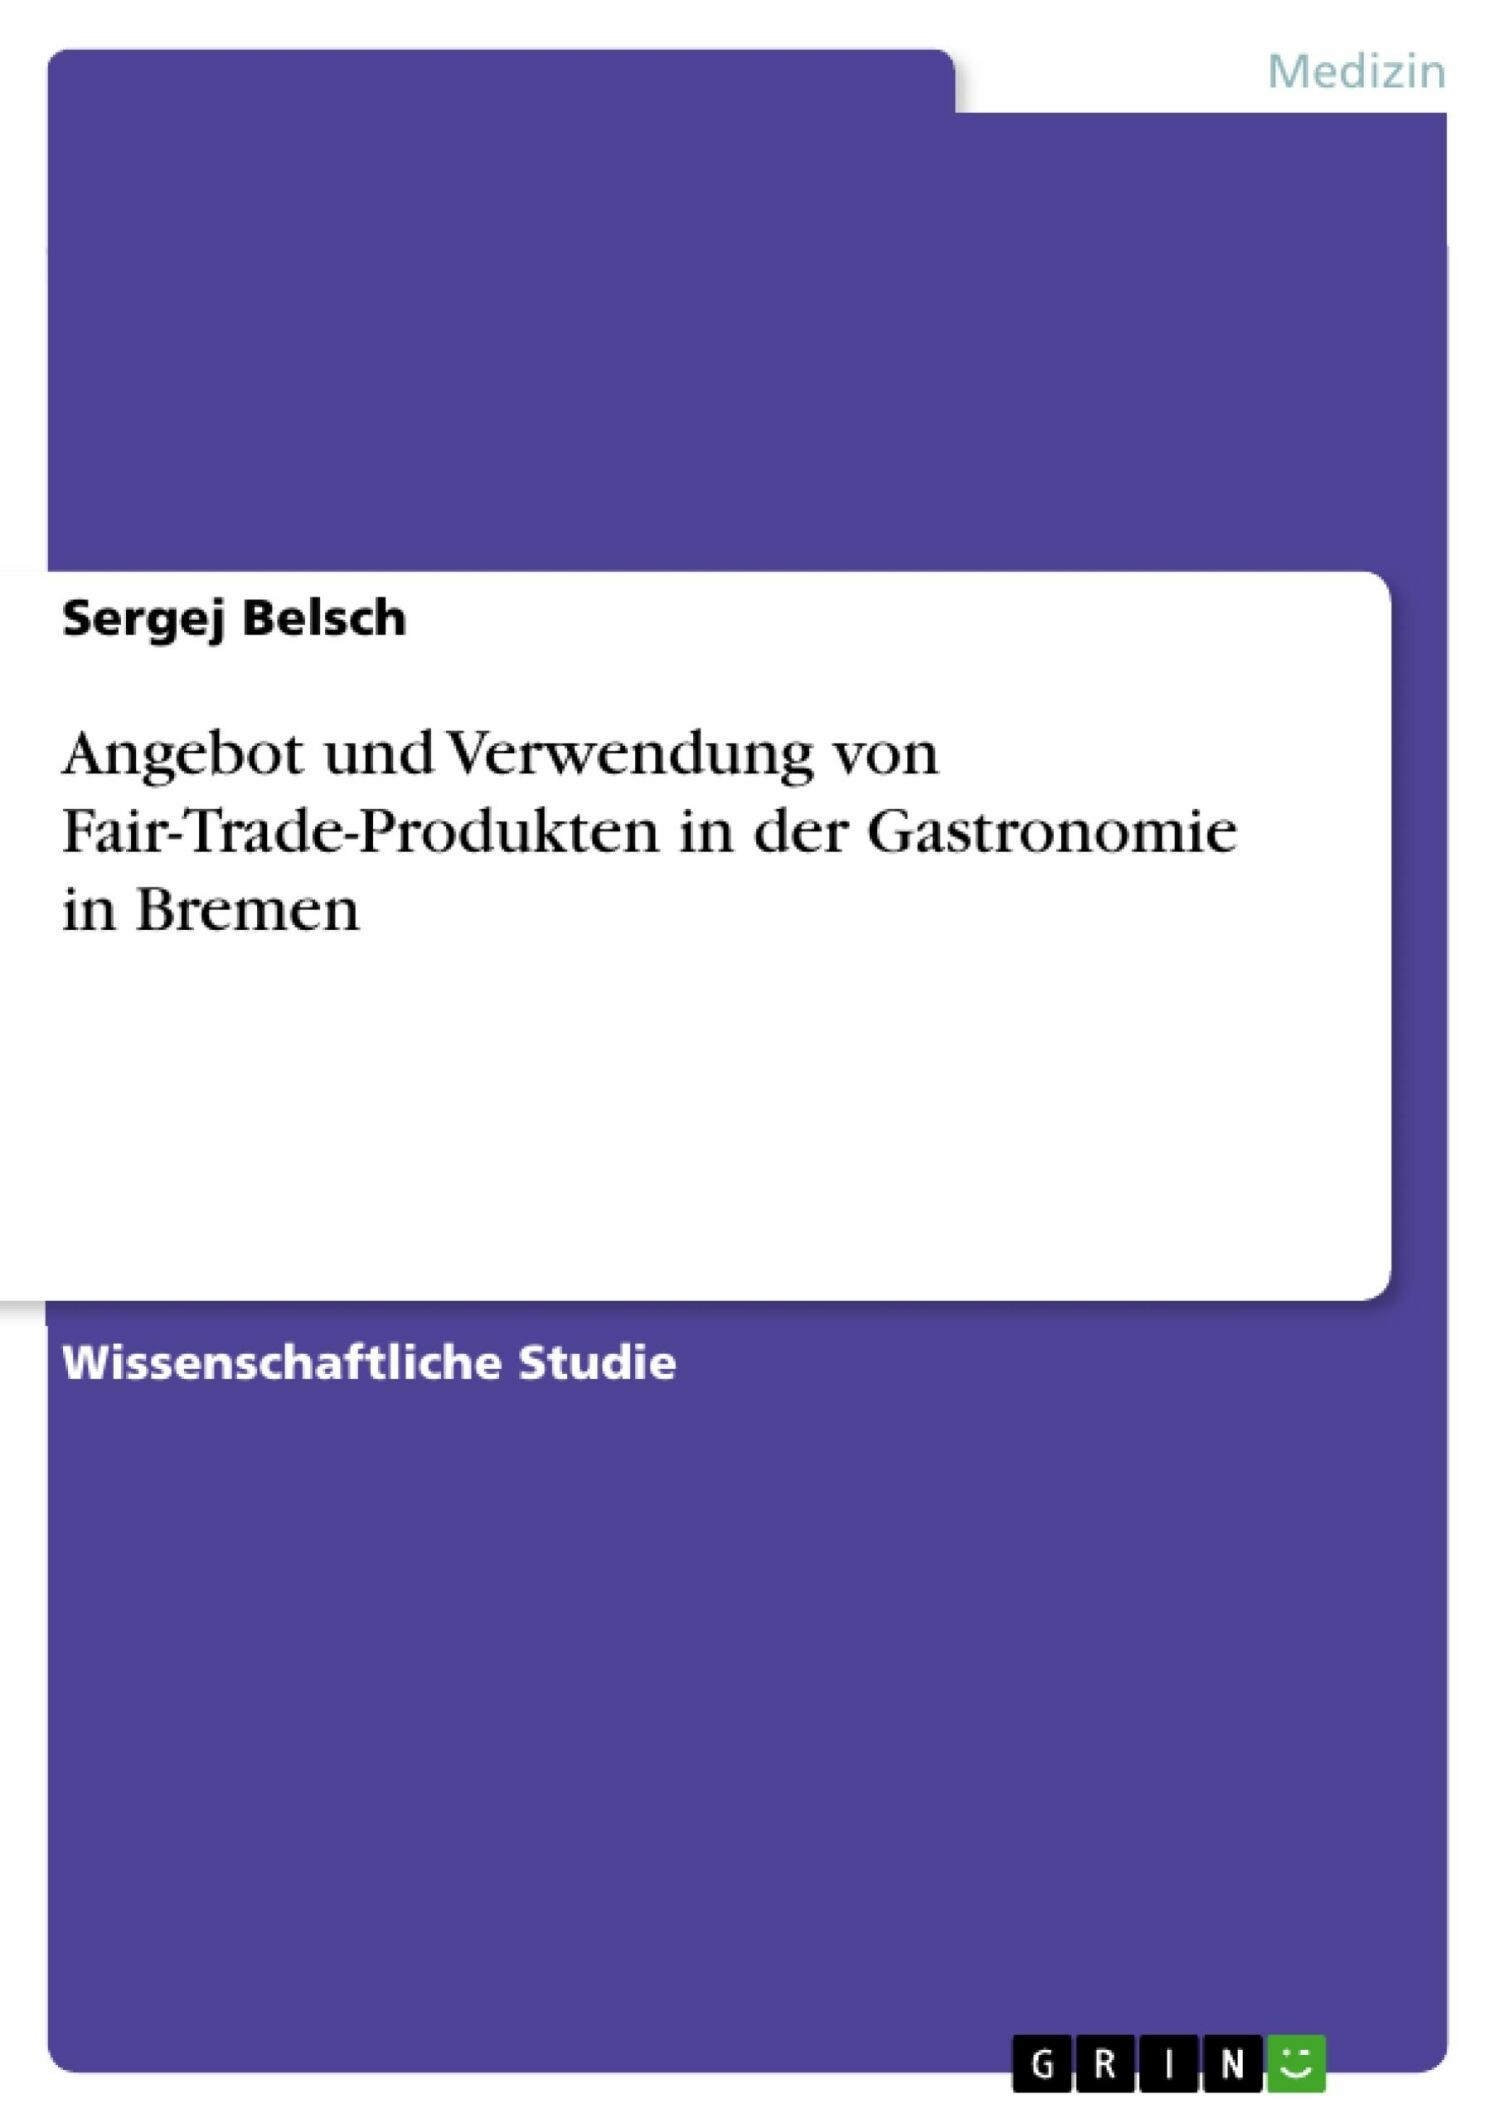 Angebot und Verwendung von Fair-Trade-Produkten in der Gastronomie in Bremen